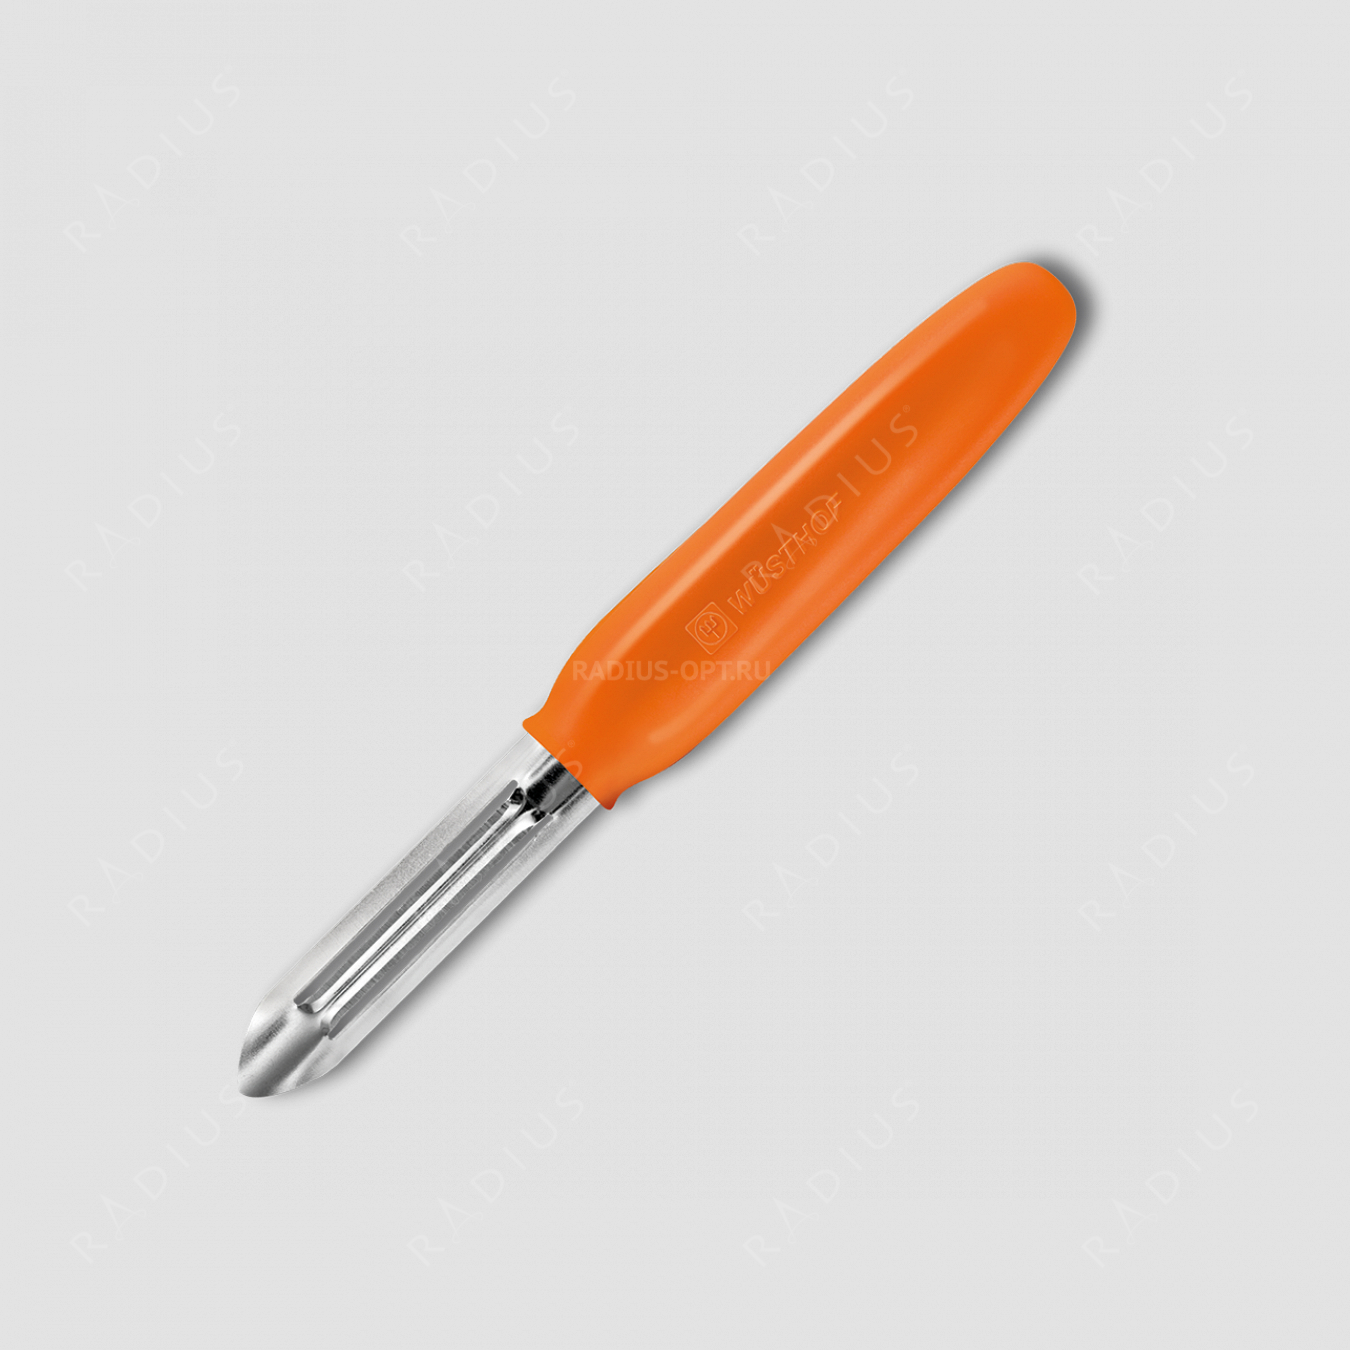 Нож кухонный для чистки овощей и фруктов, рукоять оранжевая, серия Sharp Fresh Colourful, WUESTHOF, Золинген, Германия